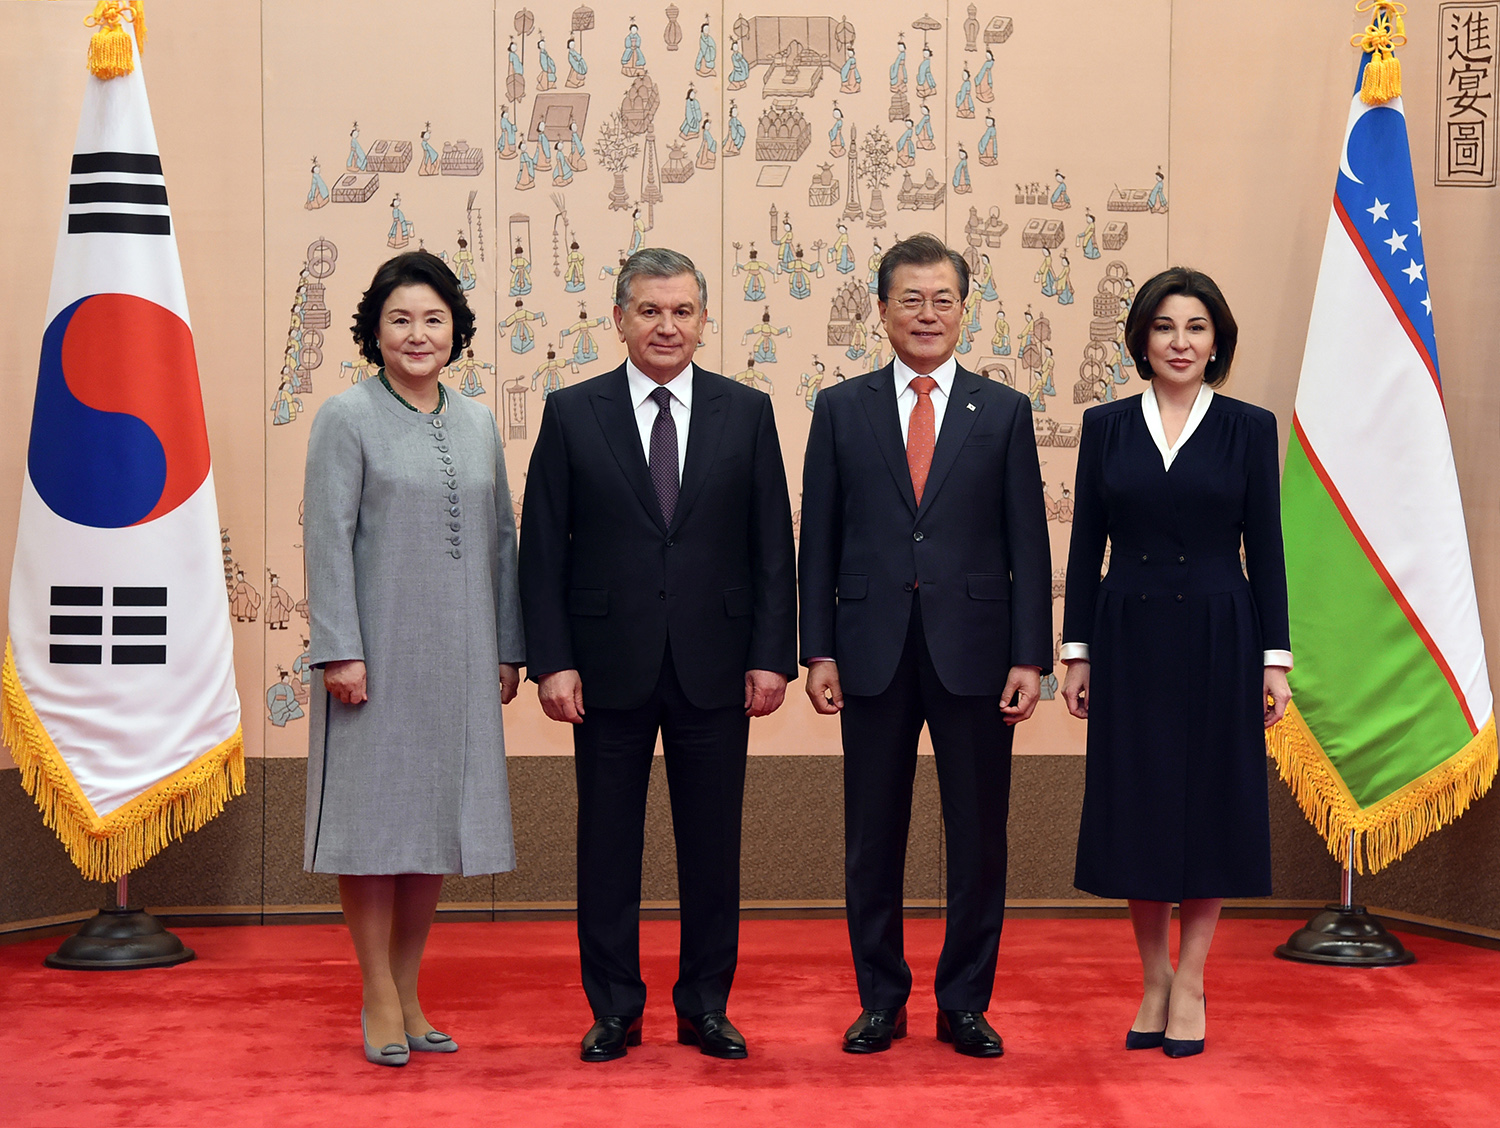 Узбекистан- Южная Корея: Новый этап отношений стратегического партнерства